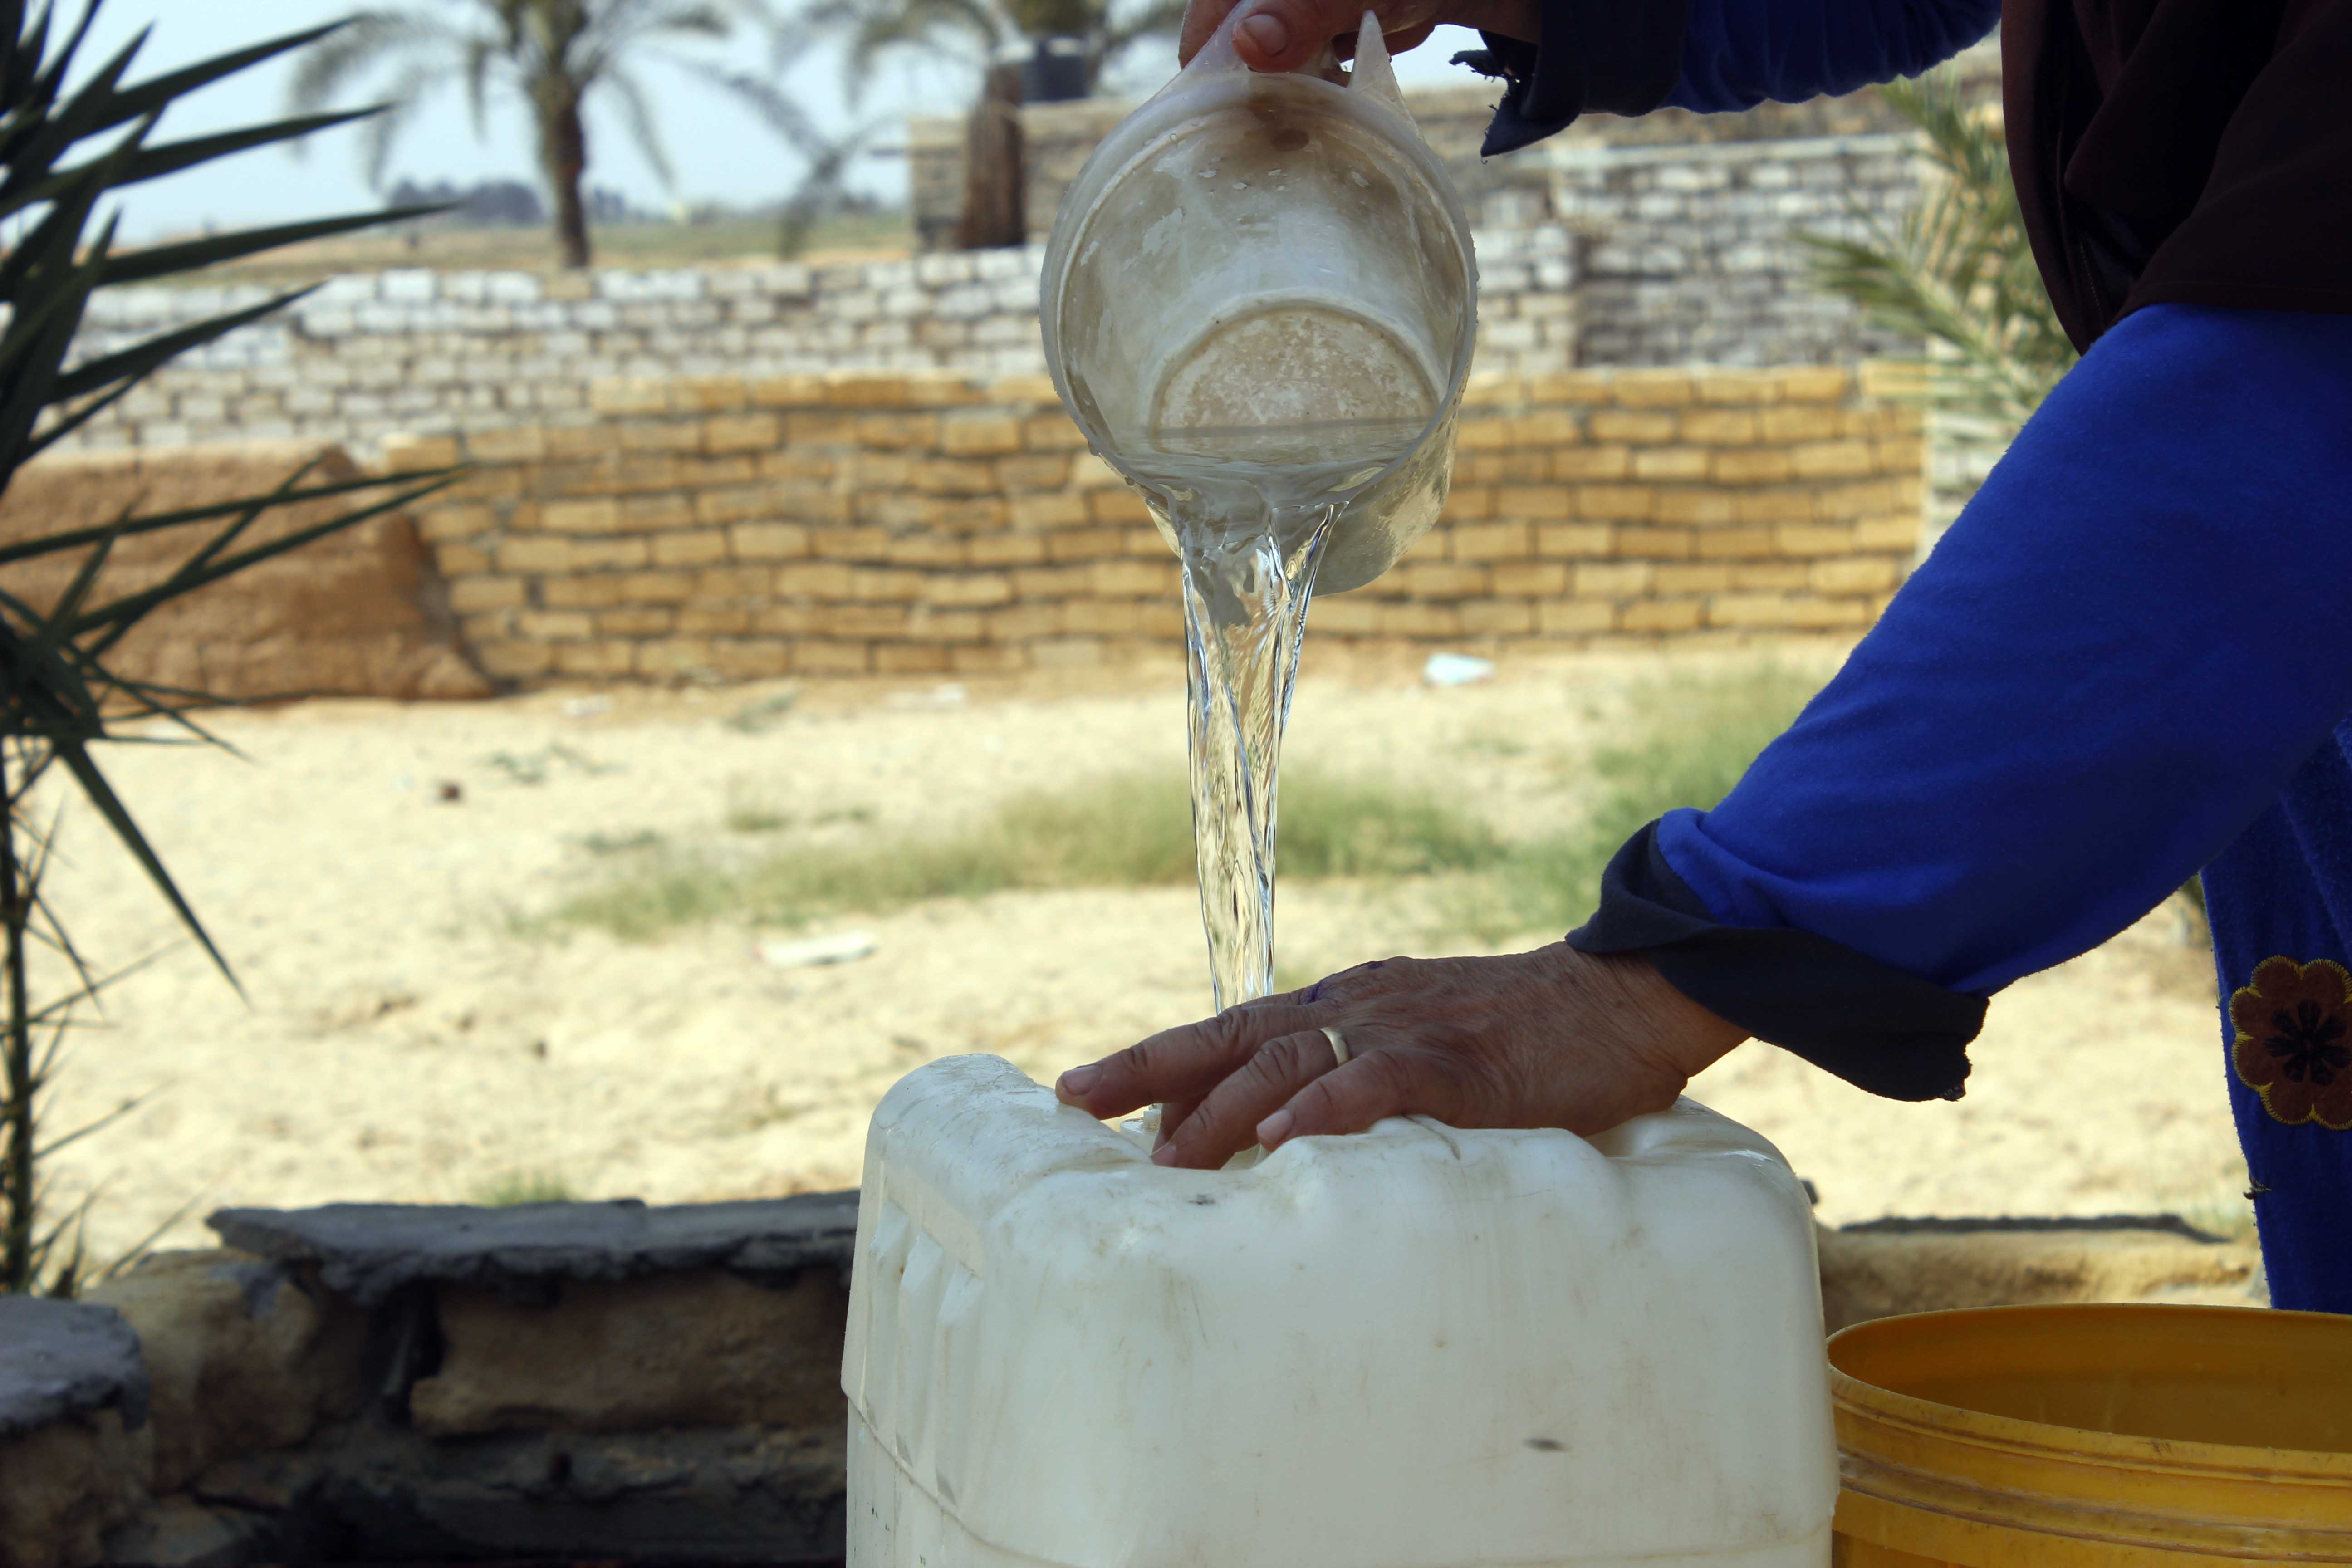 قري  تعيش بدون مياه  شرب  لأربعة أشهر  - تصوير  محمد عوض  (19)